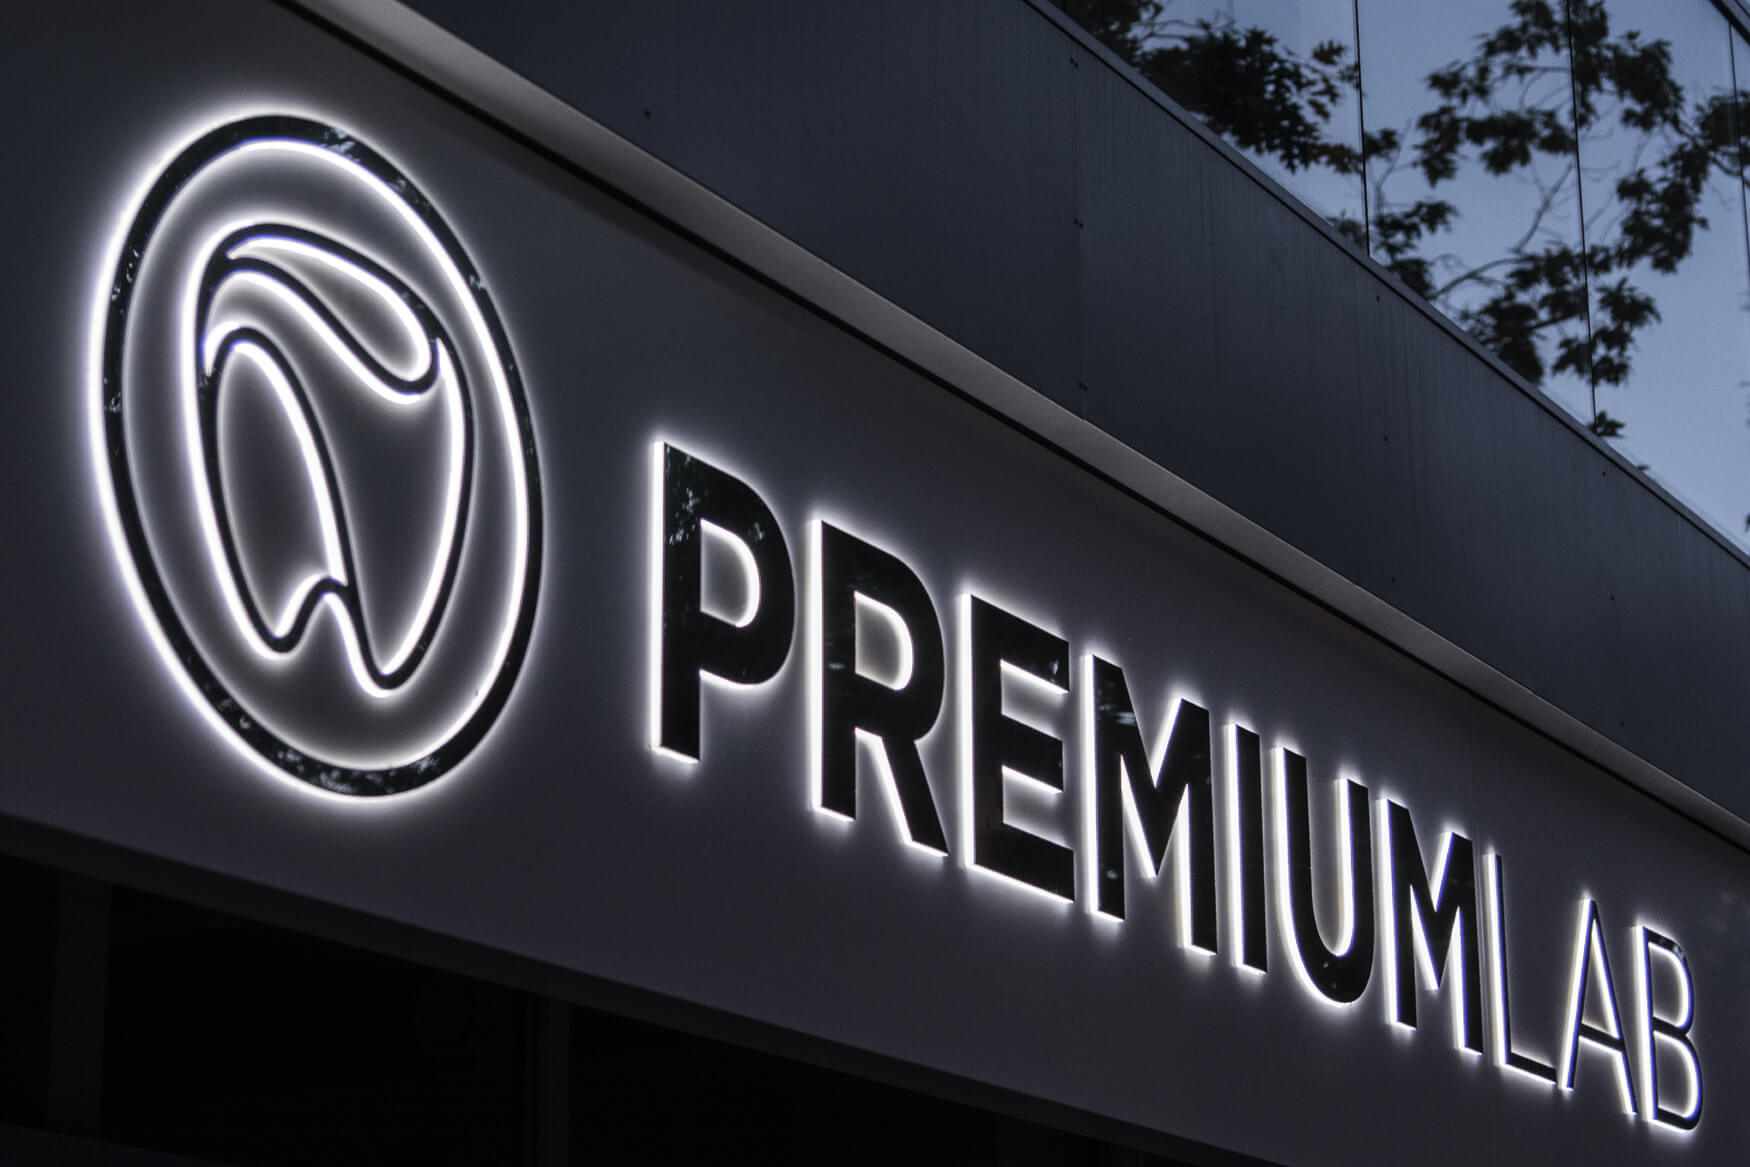 Premiumlab - Premiumlab - enseigne d'entreprise placée sur un caisson publicitaire avec des lettres spatiales en métal